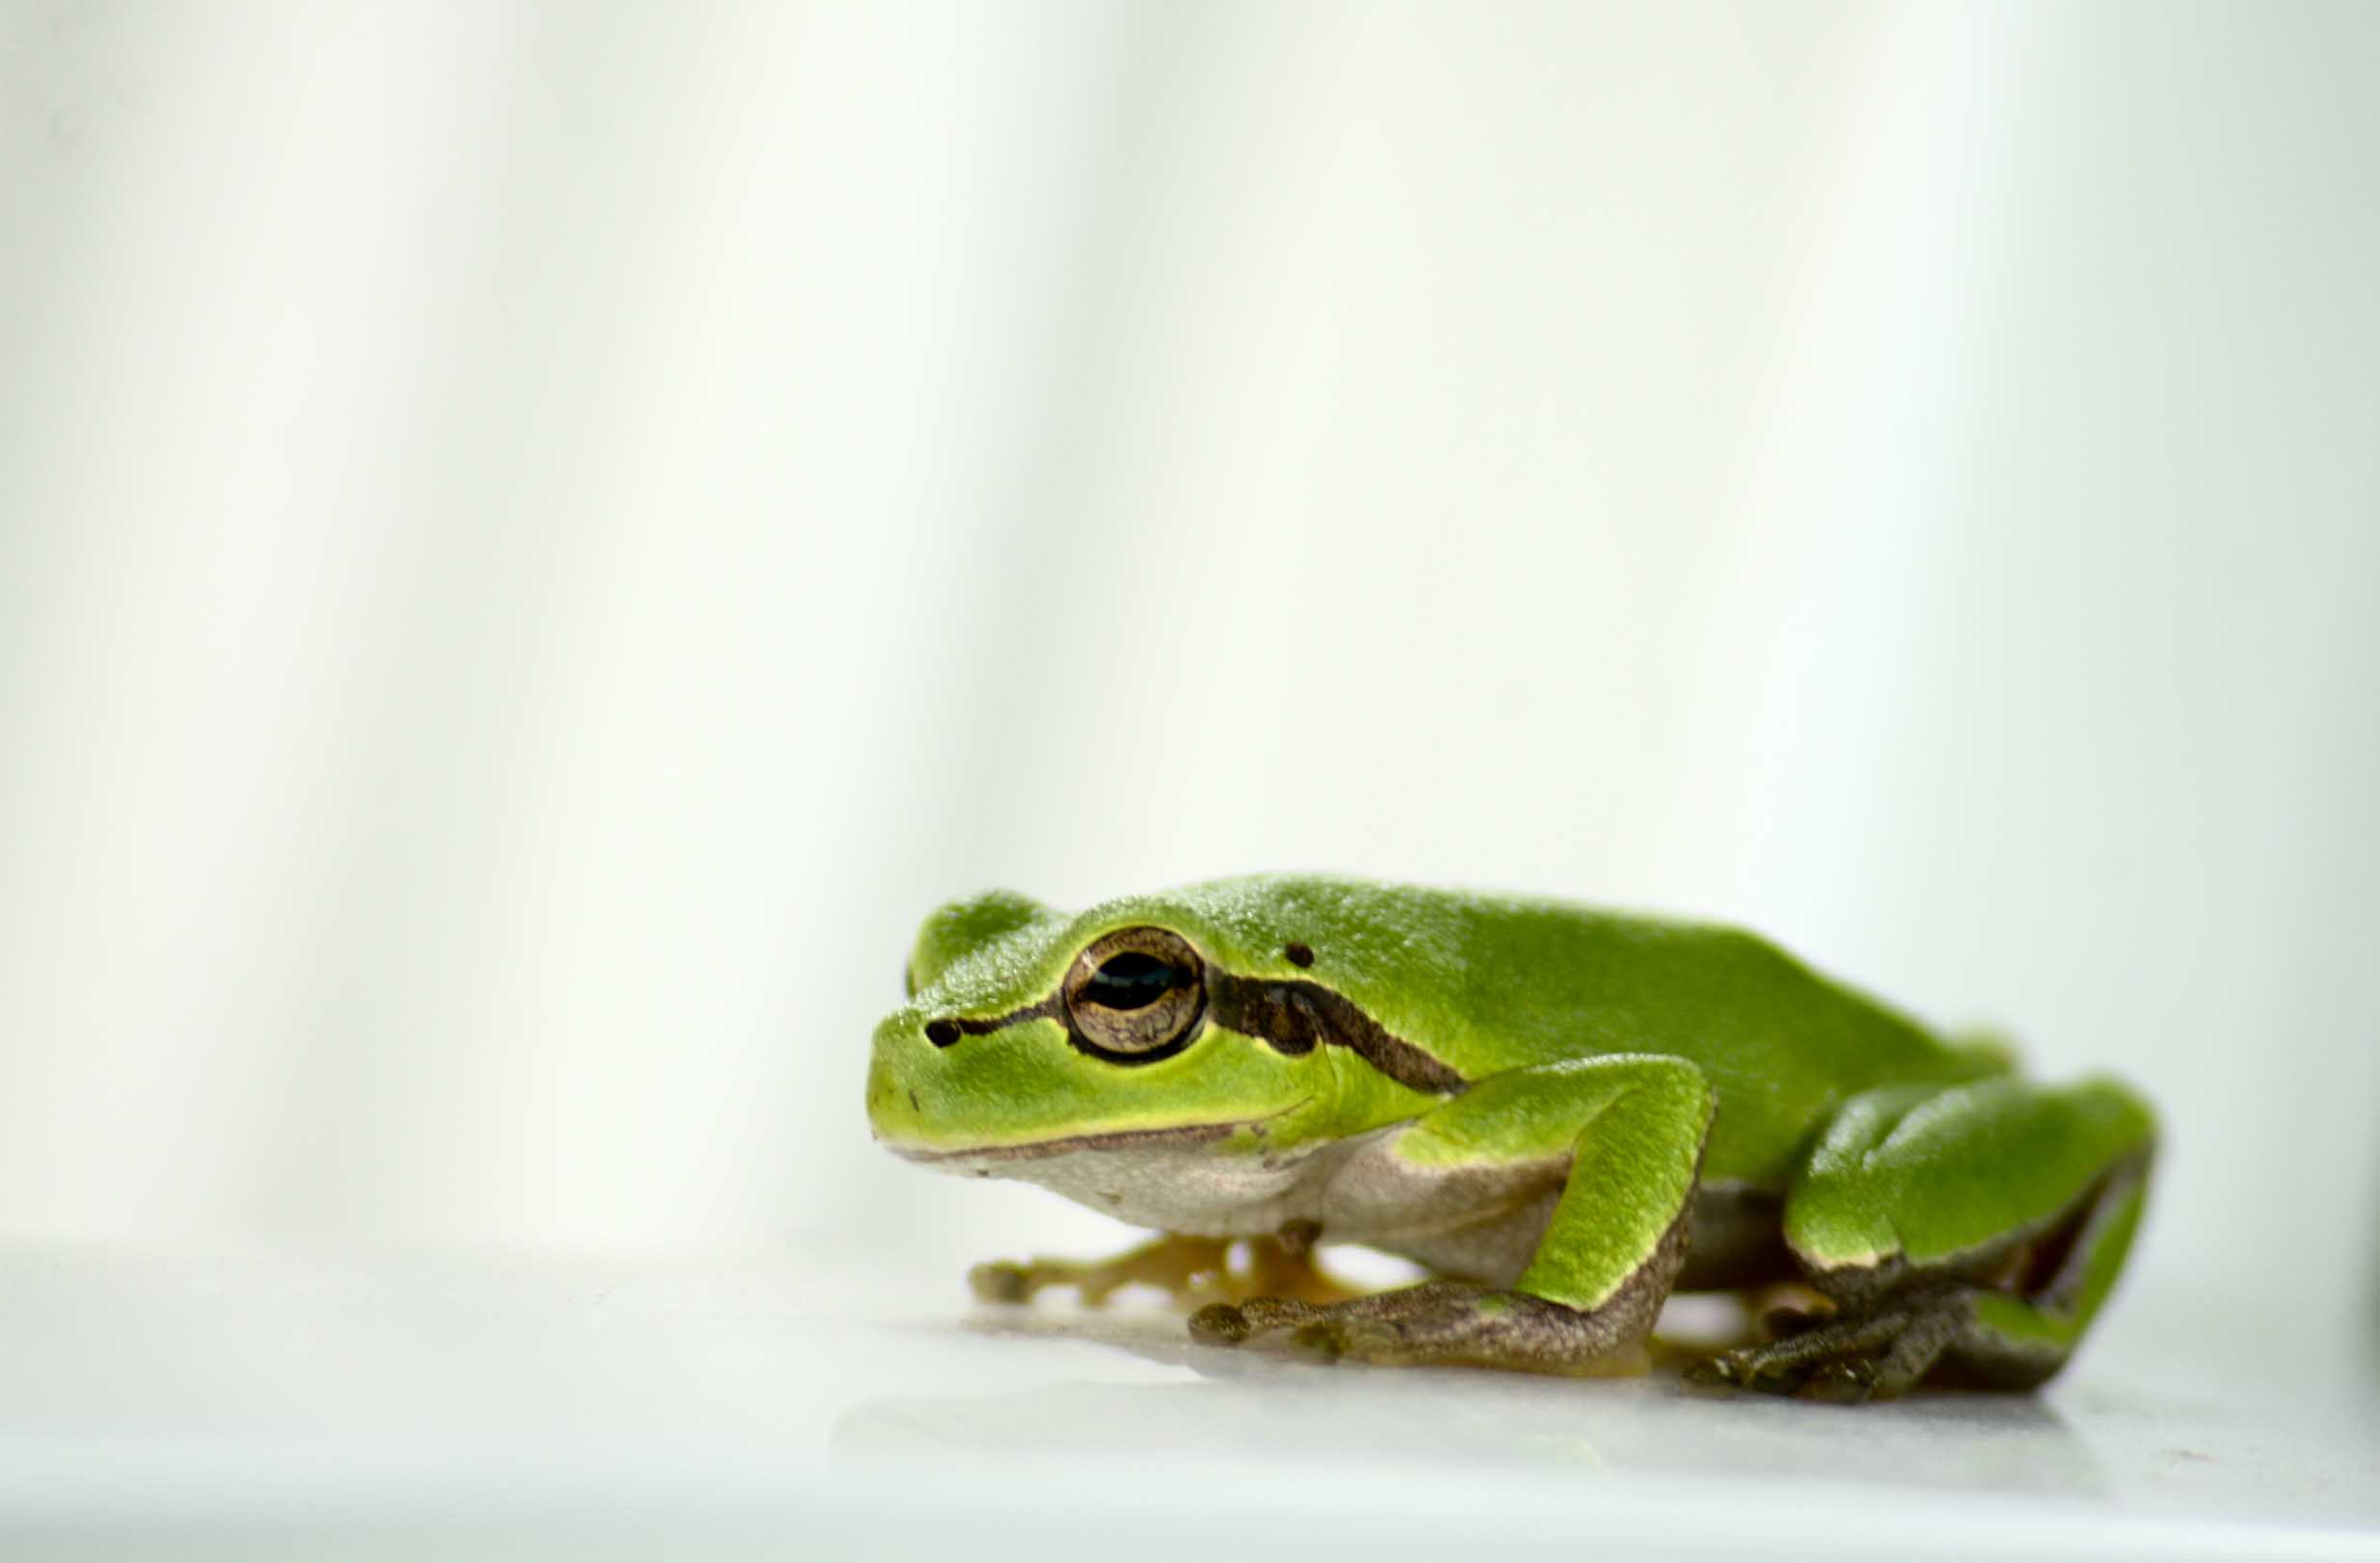 フリー画像 動物写真 両生類 蛙 カエル アマガエル 画像素材なら 無料 フリー写真素材のフリーフォト